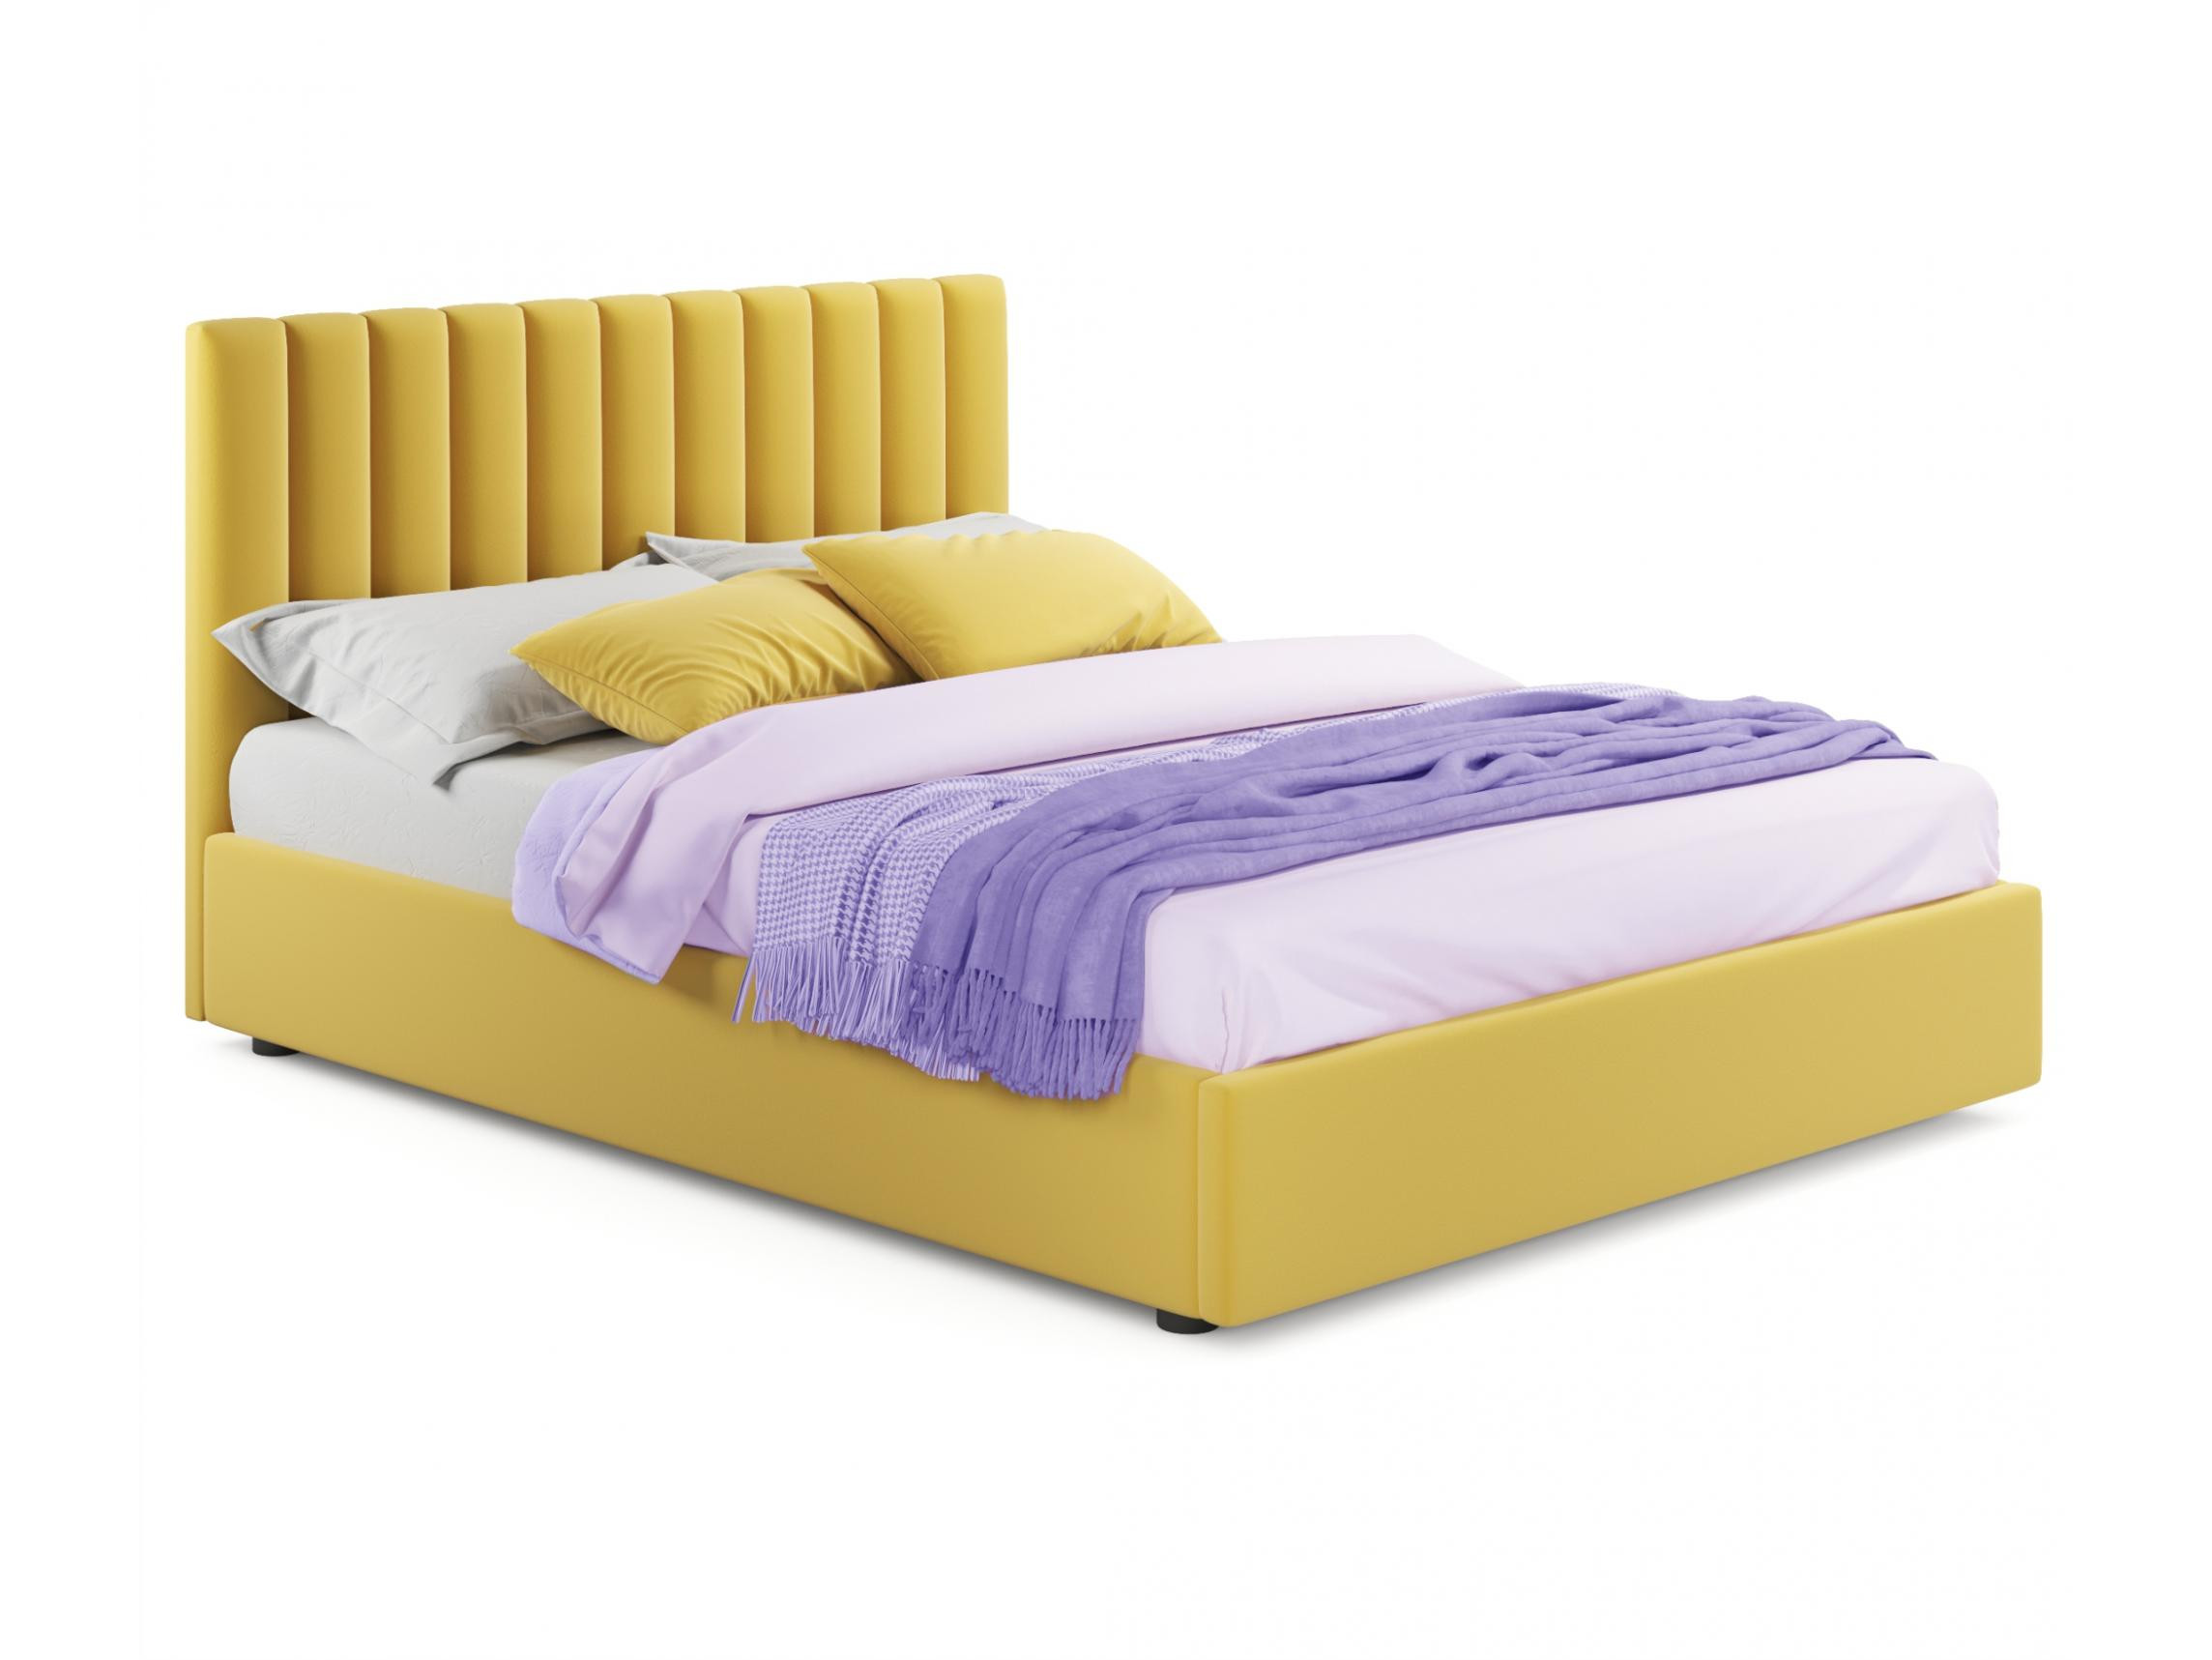 Мягкая кровать Olivia 1800 желтая с подъемным механизмом желтый, Желтый, Велюр, ДСП мягкая кровать с тумбами olivia 1600 желтая с подъемным механизмом желтый желтый велюр дсп